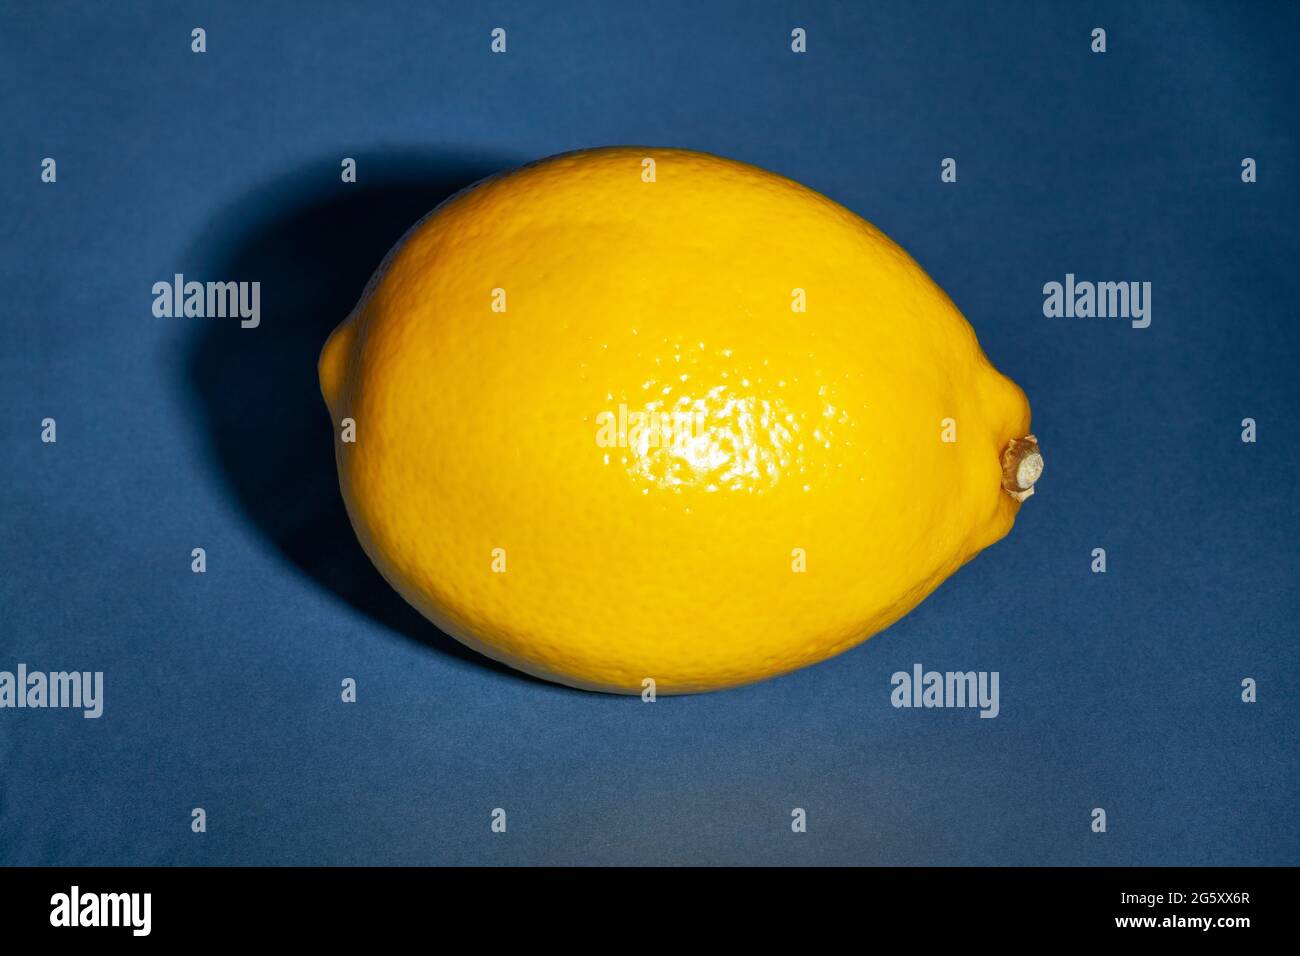 single lemon on blue background Stock Photo